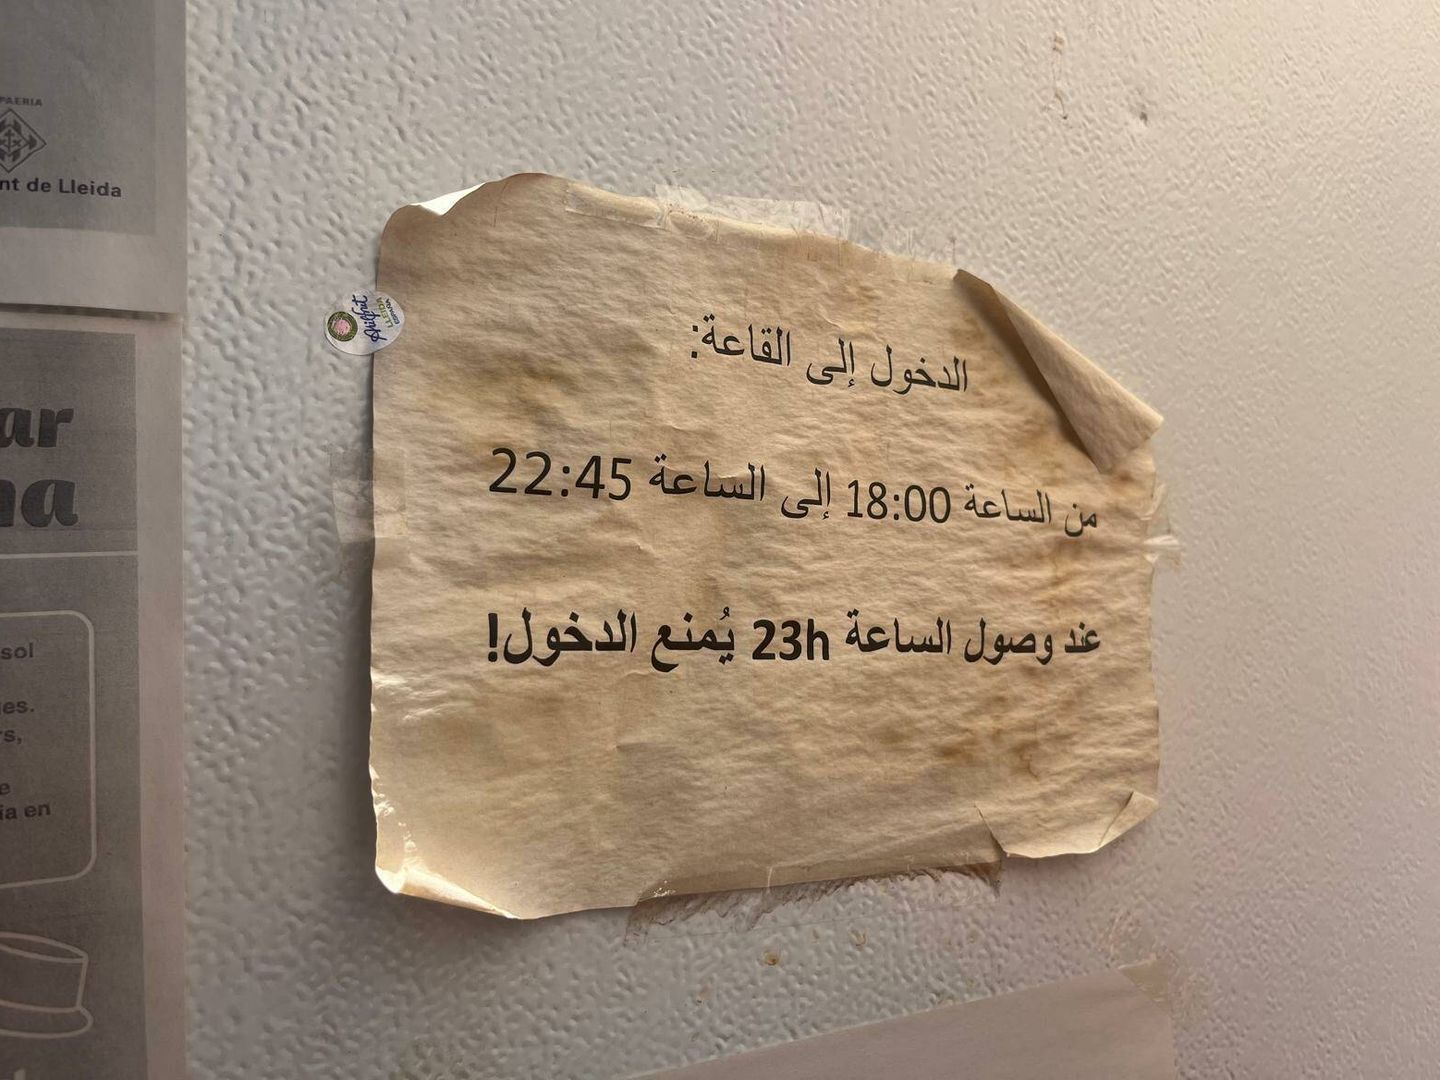 Una nota escrita en árabe en un centro de acogida de Lleida. (C.S.)